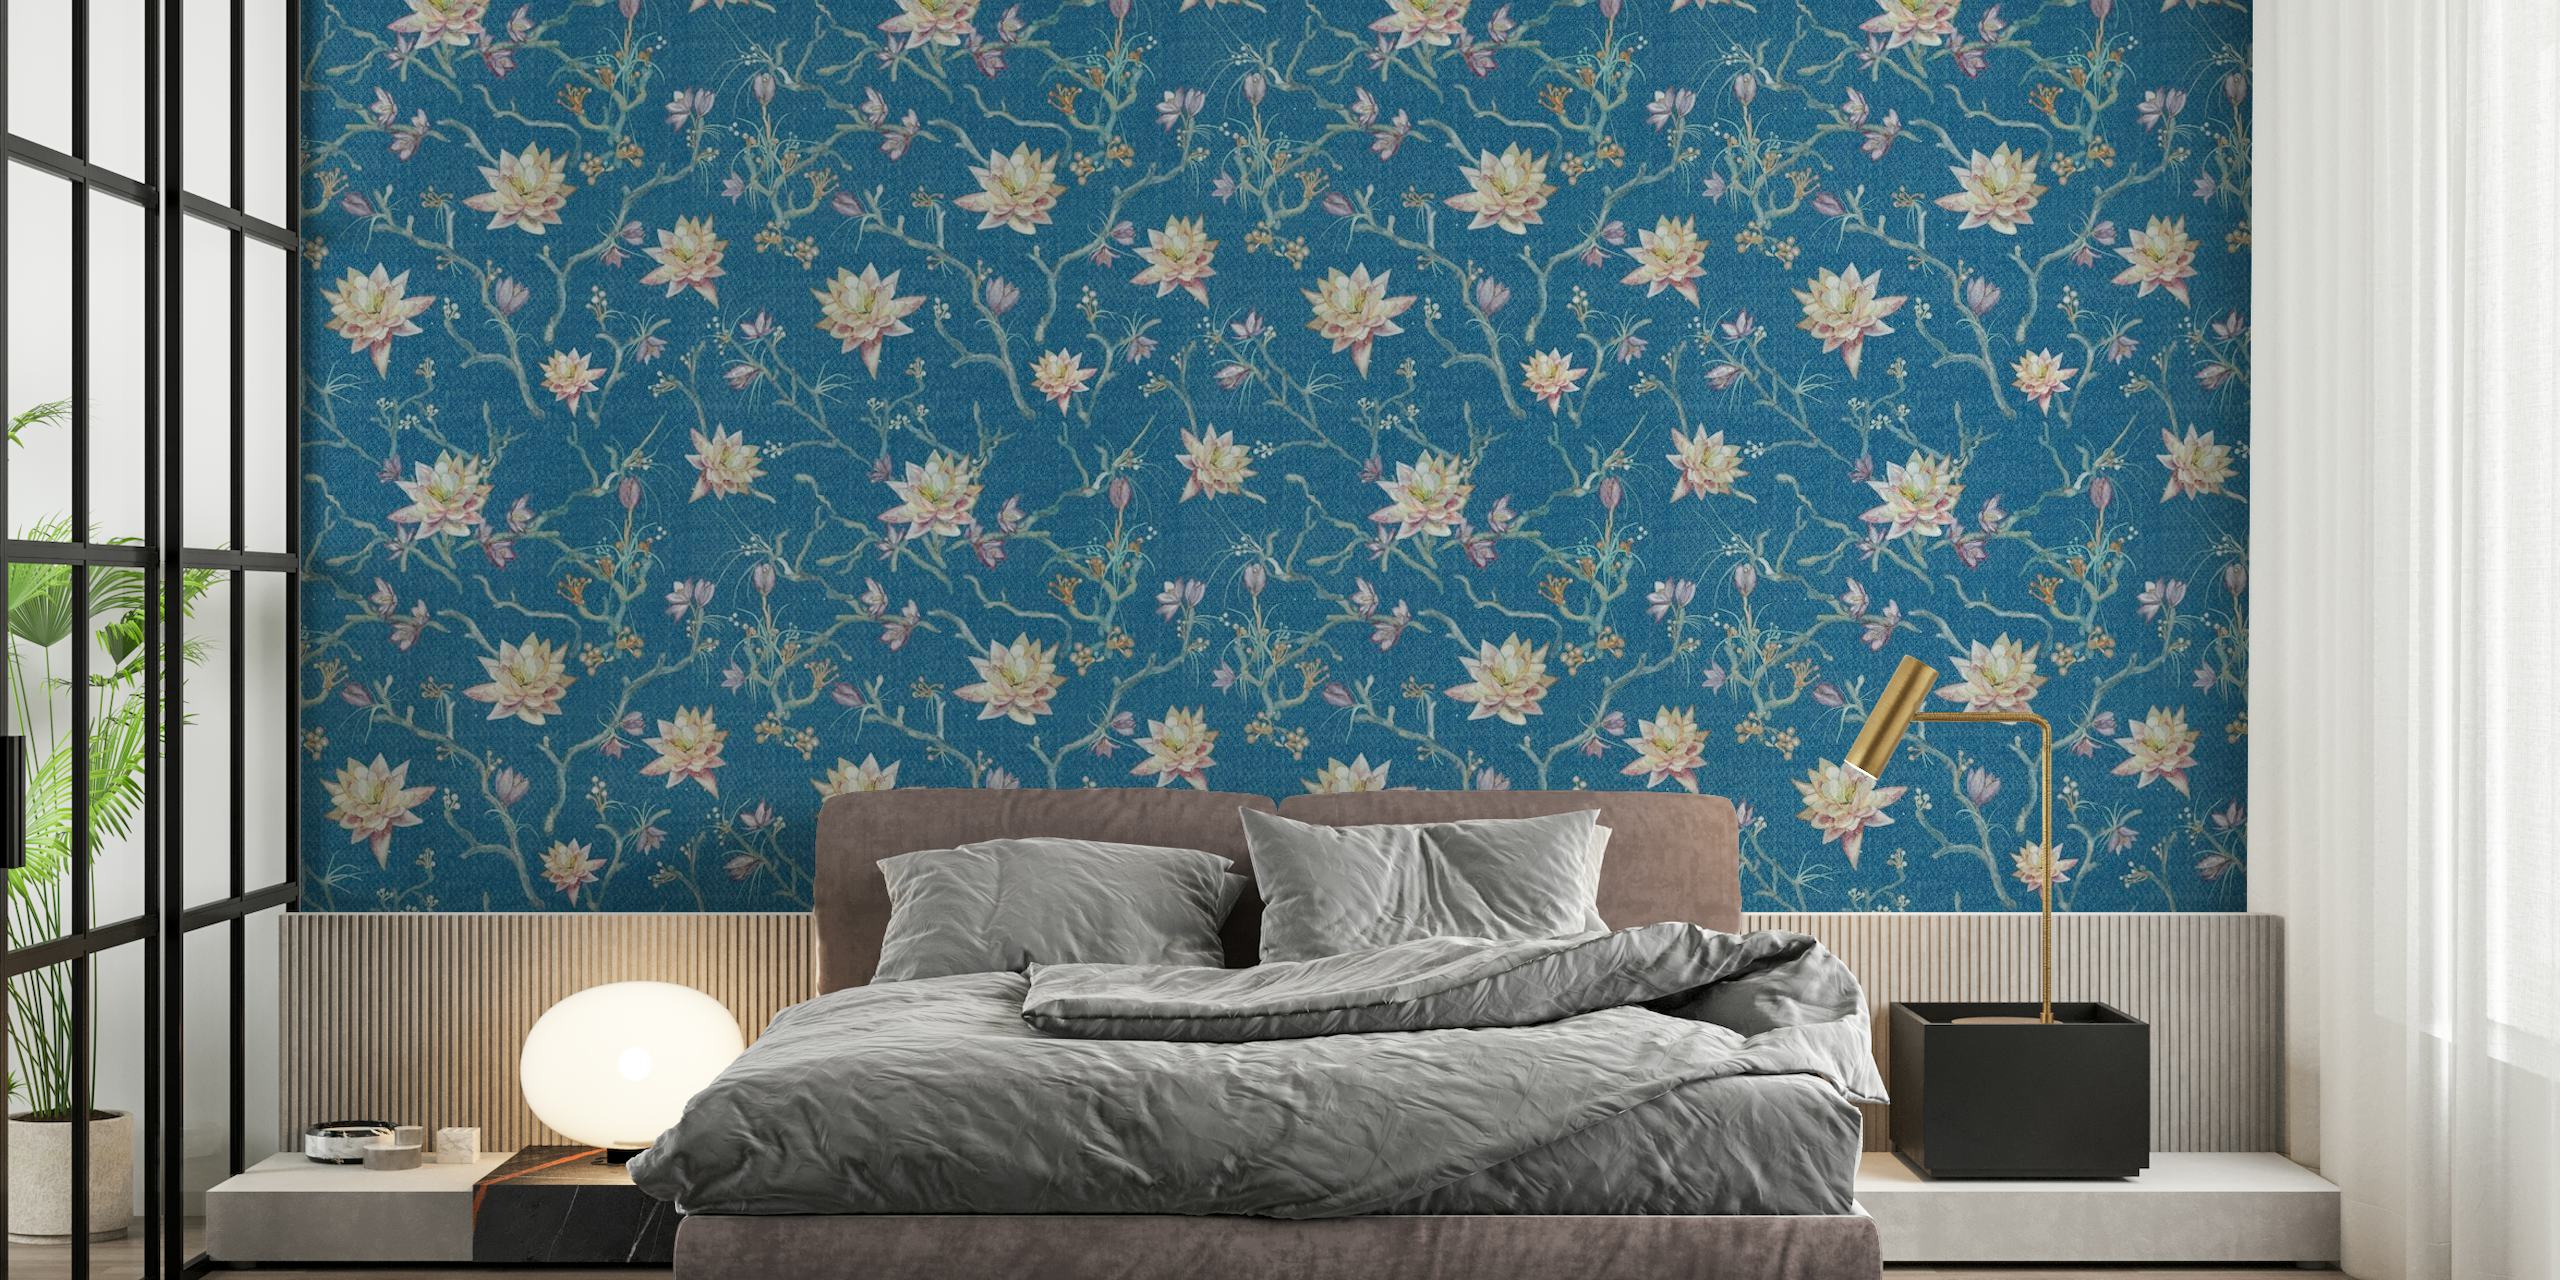 Papier peint mural Lotus de printemps avec fond bleu et fleurs de lotus en fleurs blanches